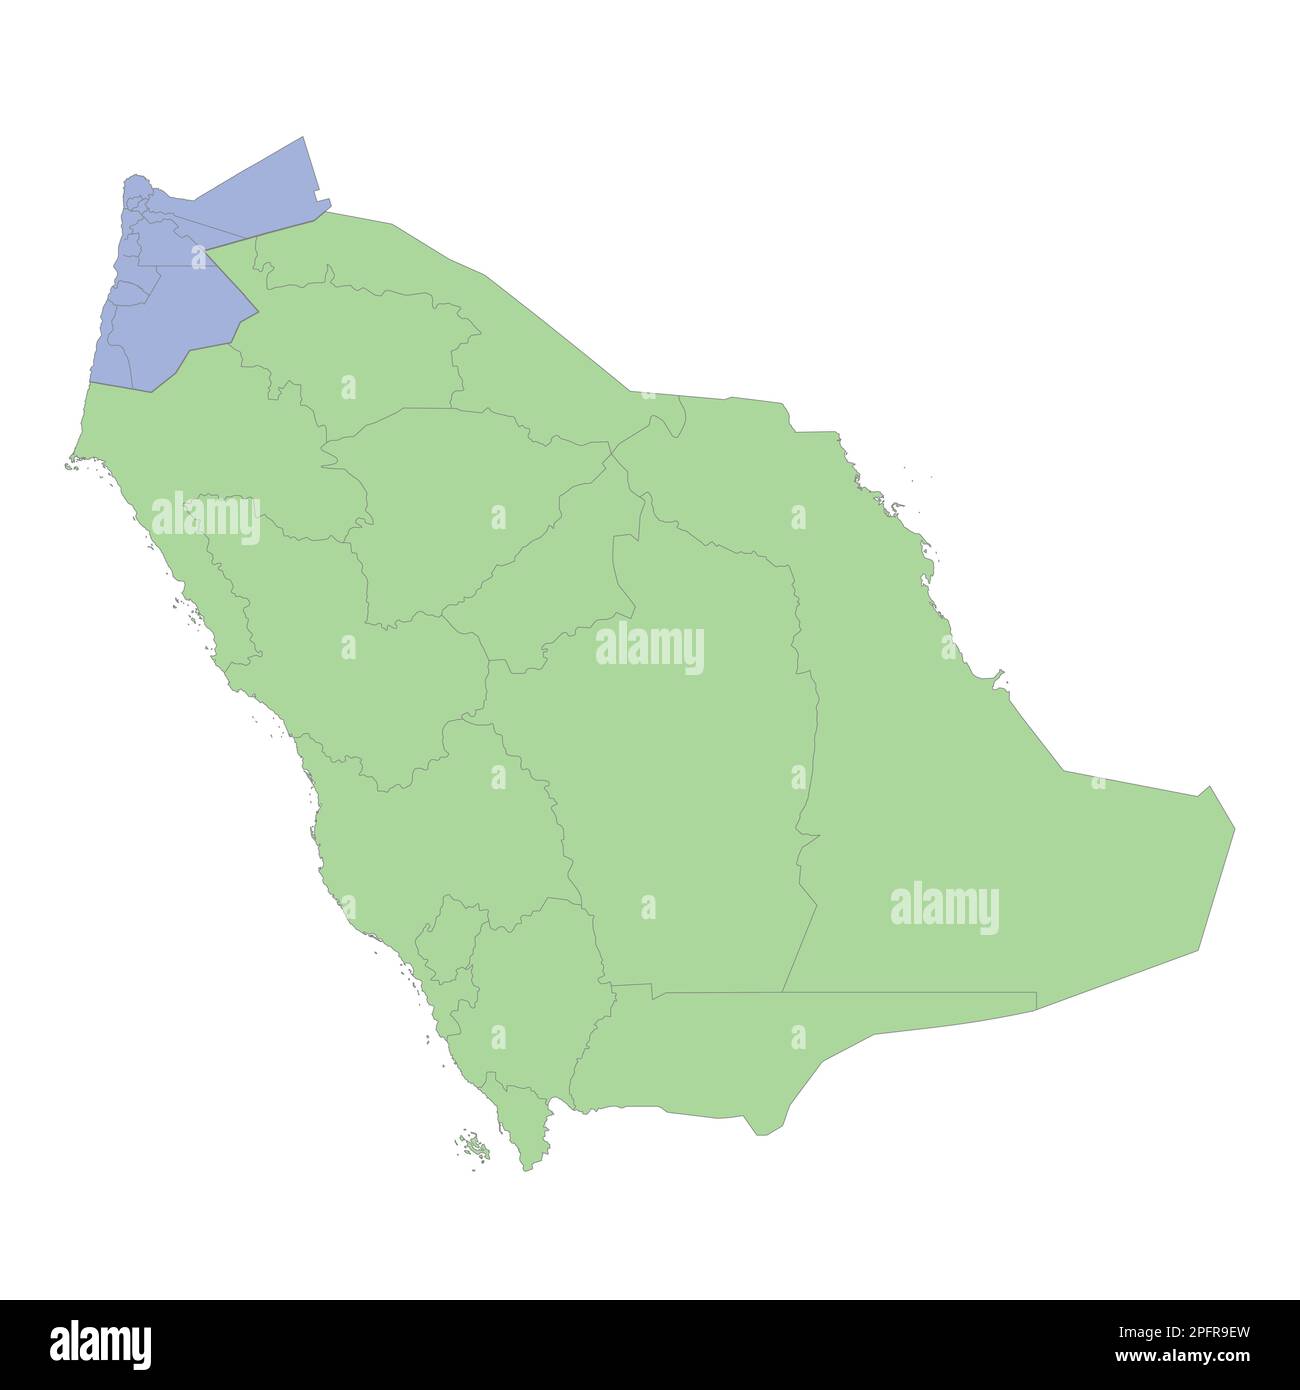 Mappa politica di alta qualità dell'Arabia Saudita e della Giordania con i confini delle regioni o province. Illustrazione vettoriale Illustrazione Vettoriale